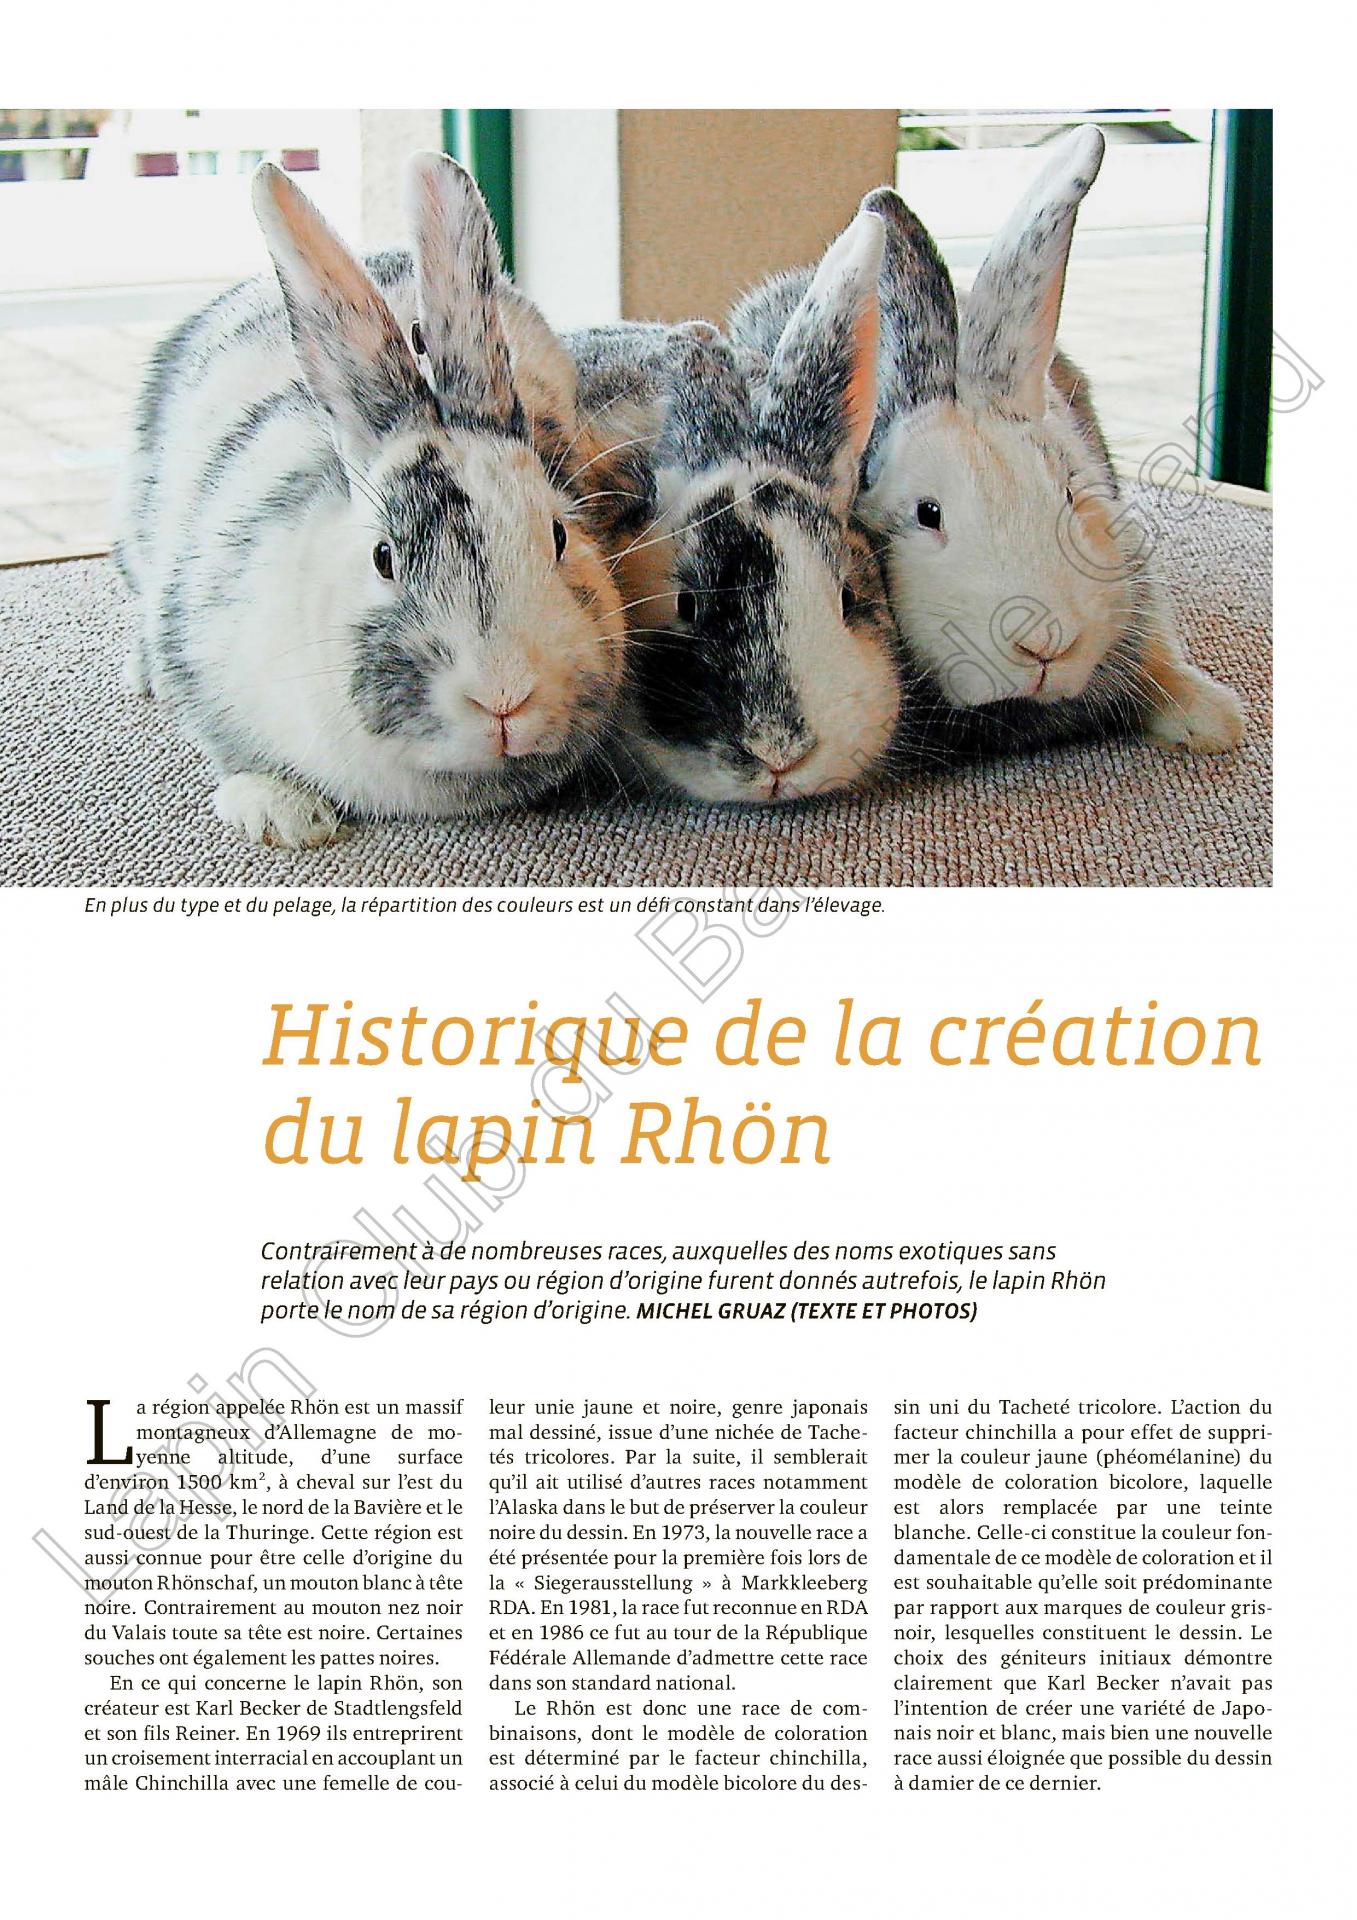 Historique de la creation du lapin rhon 1